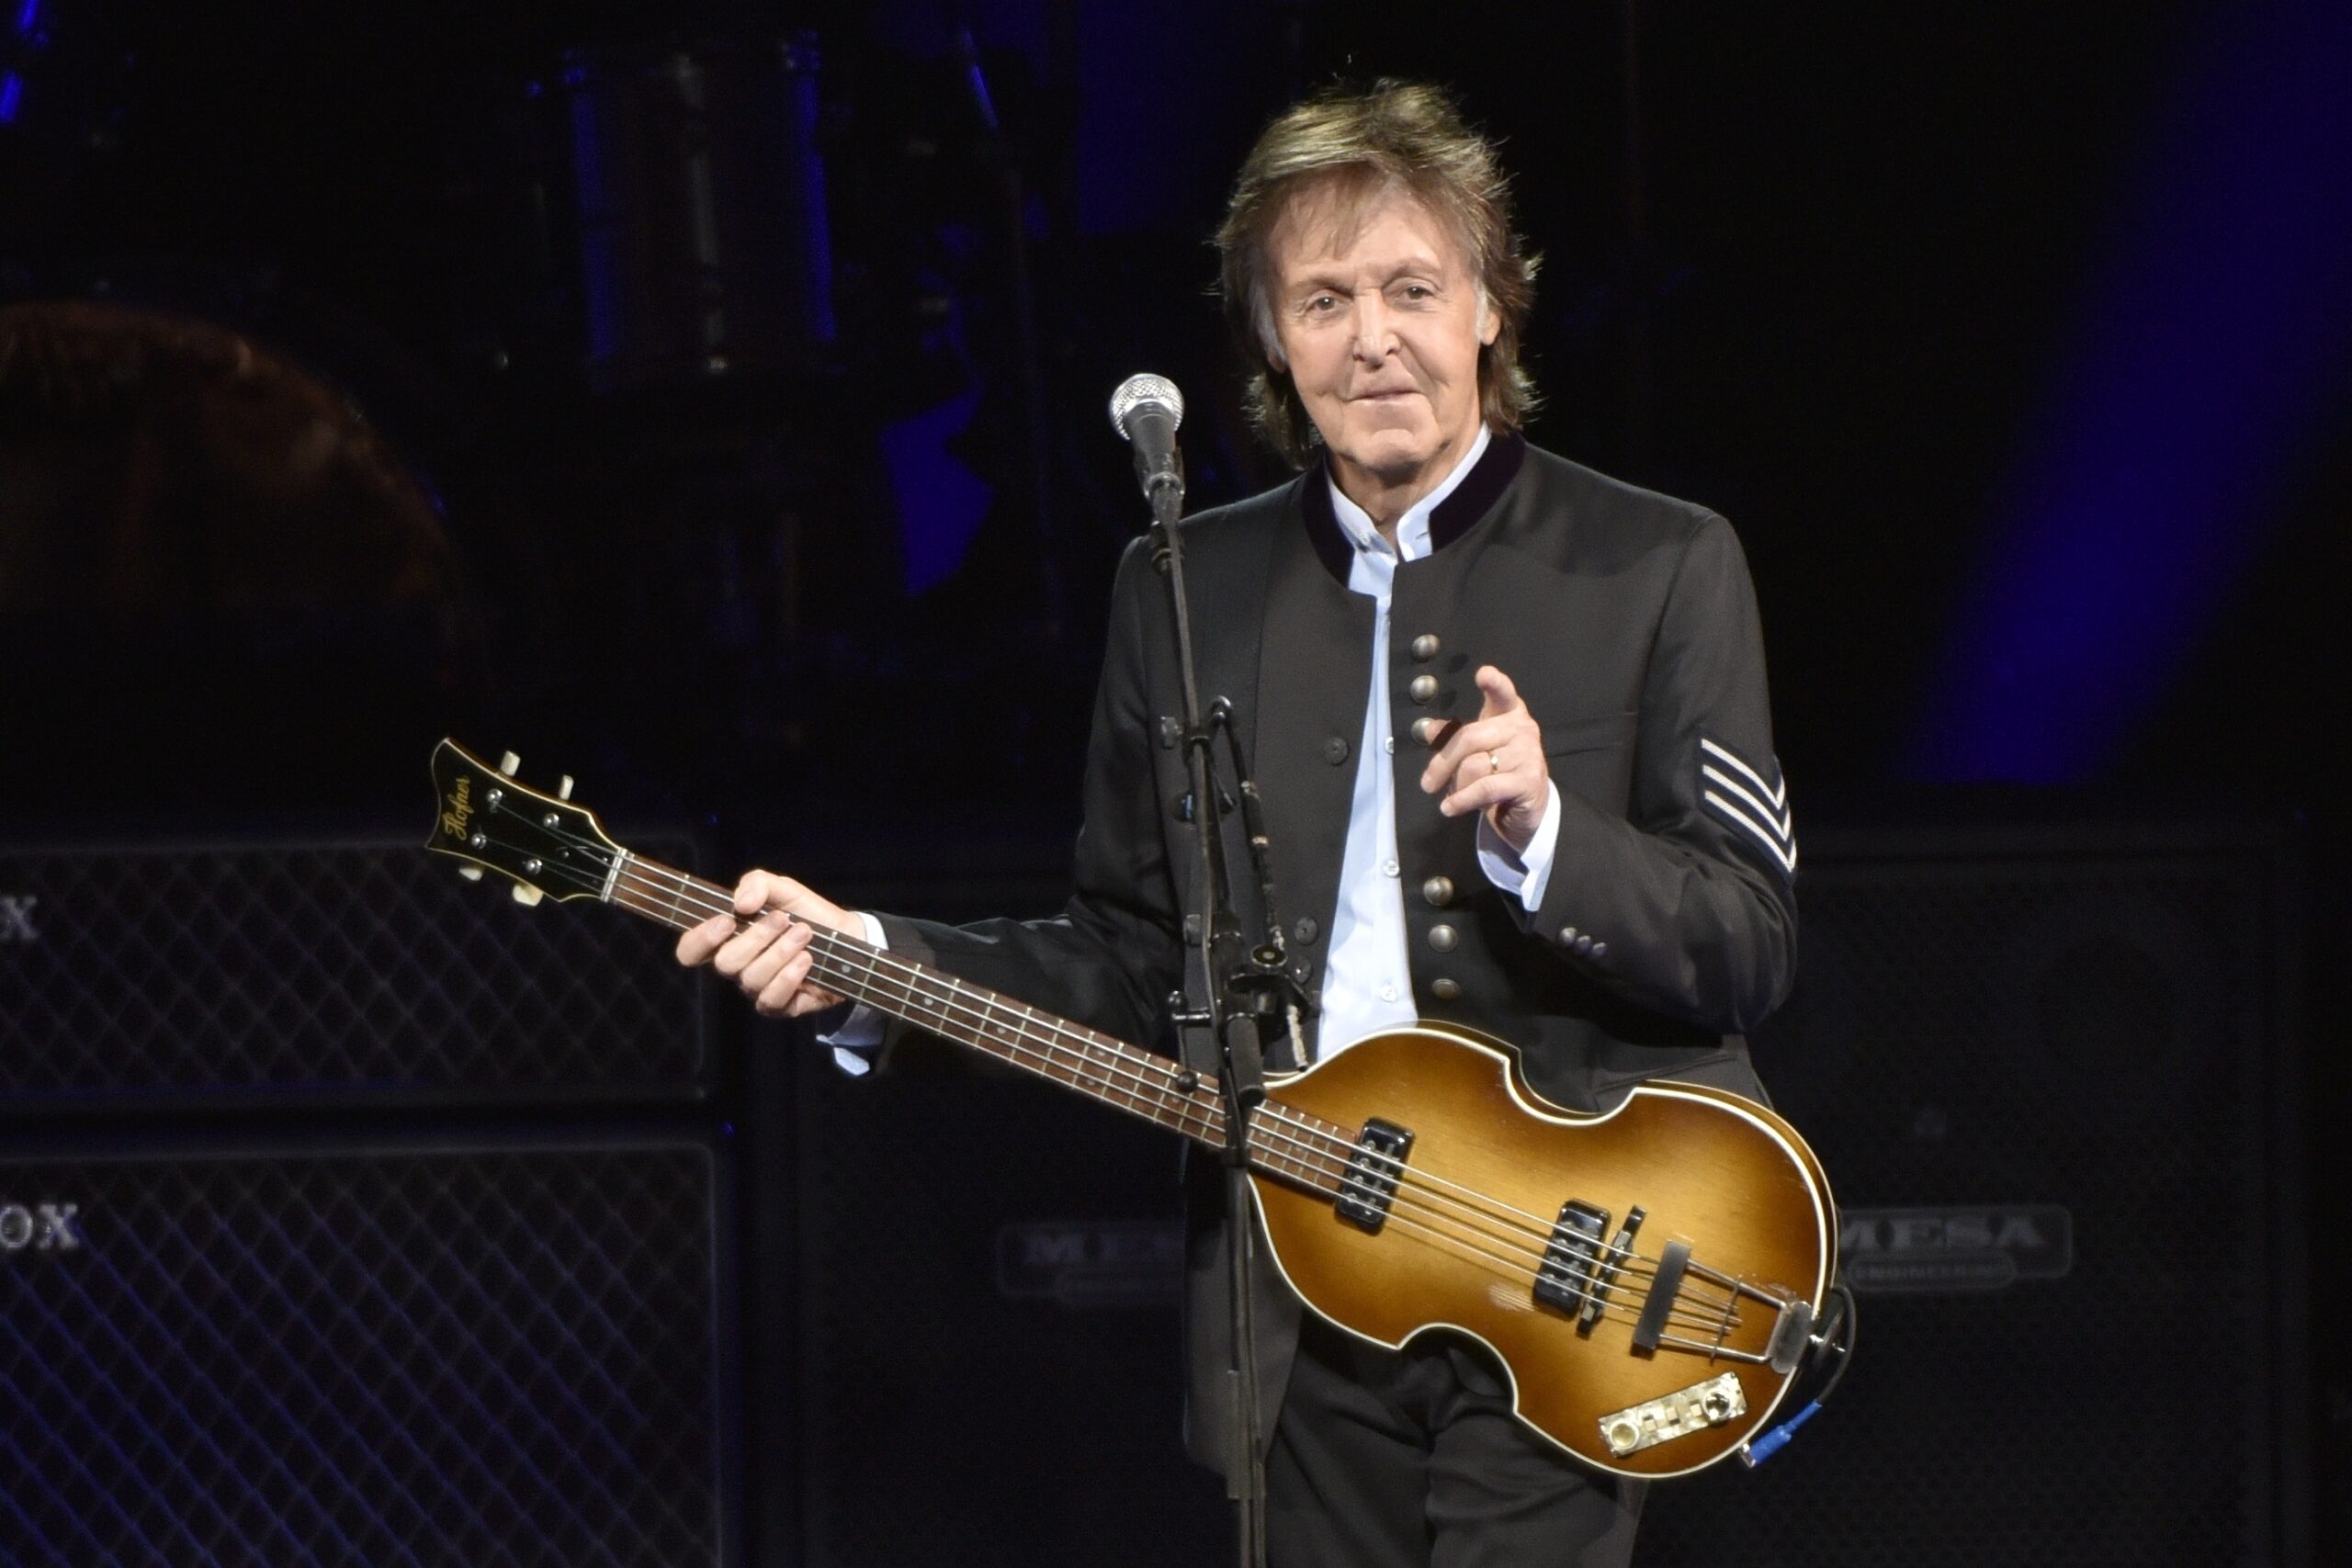 Paul McCartney mit Gitarre in der Hand - zeigt ins Publikum und lächelt